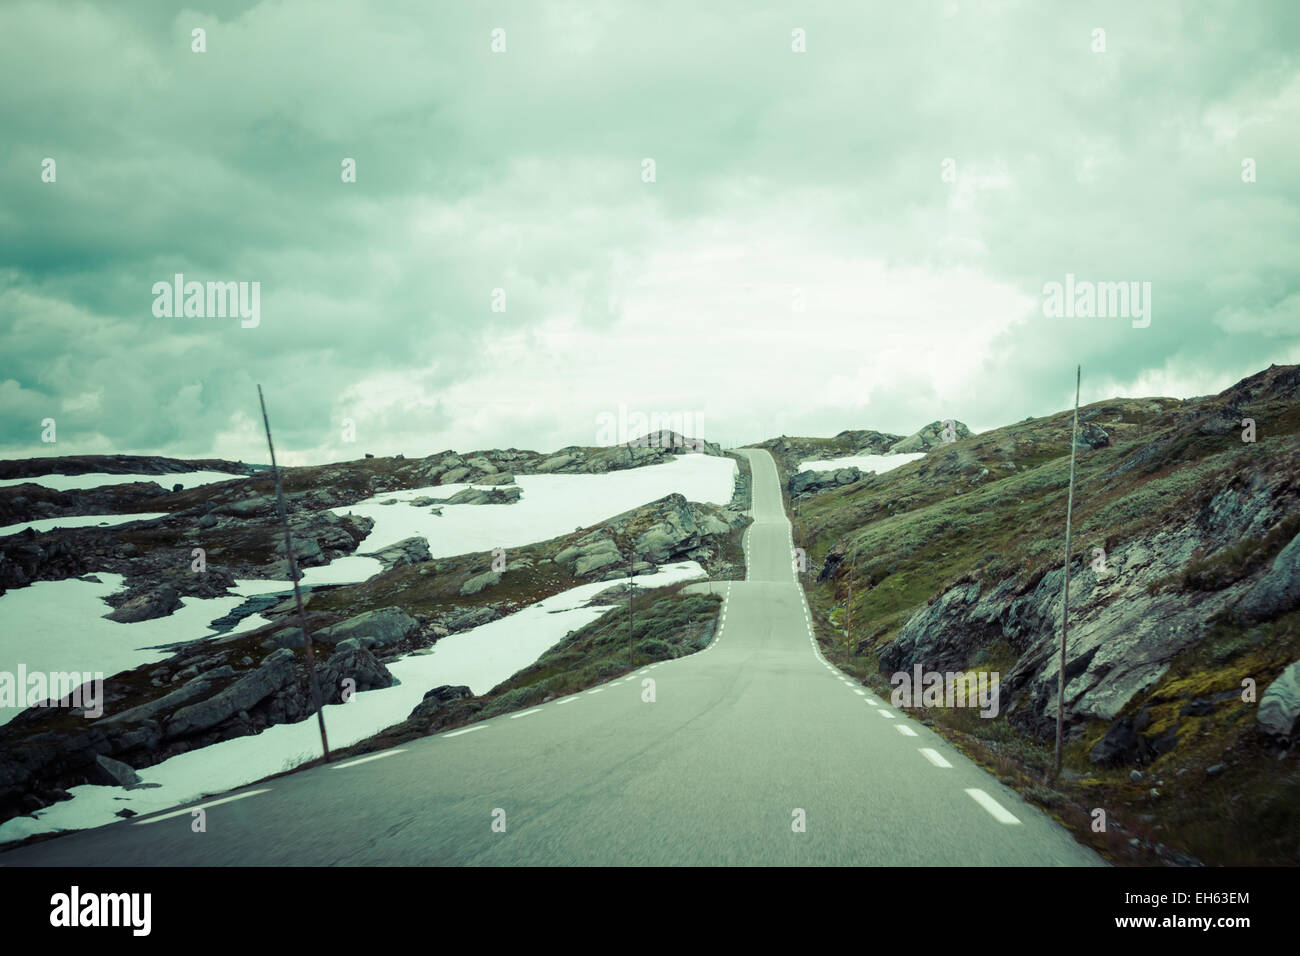 Des paysages de montagne dans le parc national de Jotunheimen en Norvège Banque D'Images